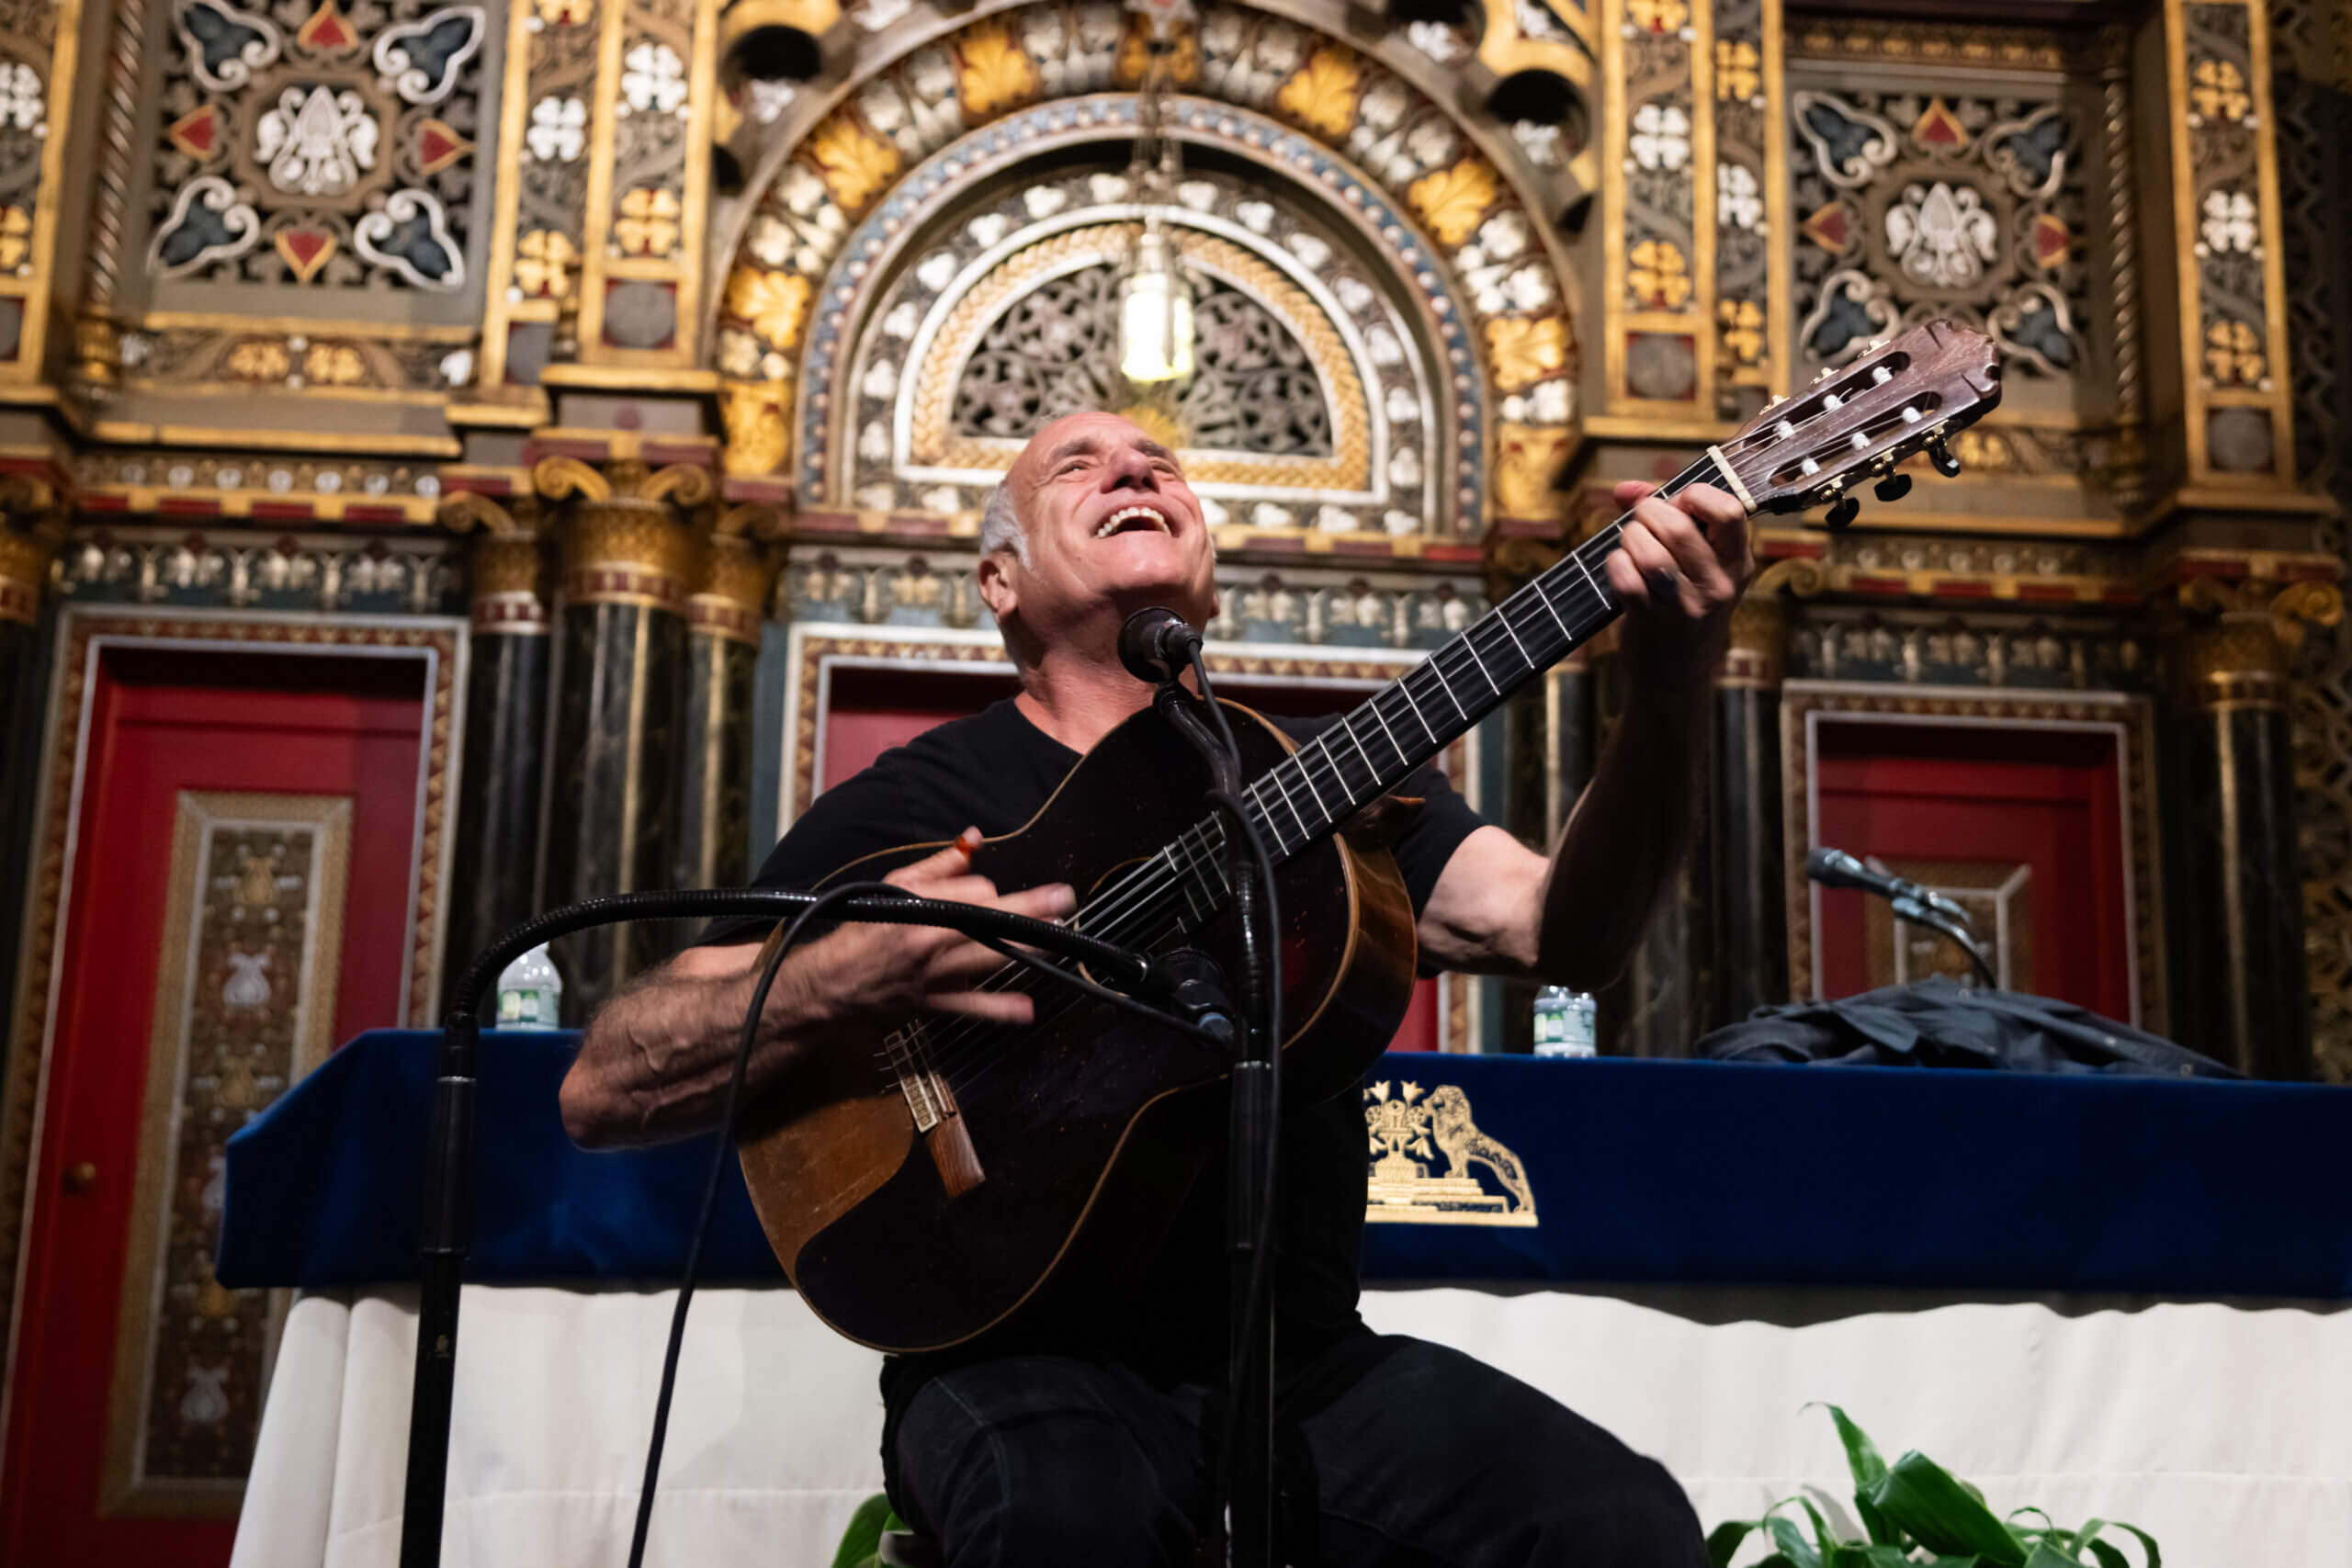 David Broza performs Oct. 22 at Bnai Jeshurun Synagogue.